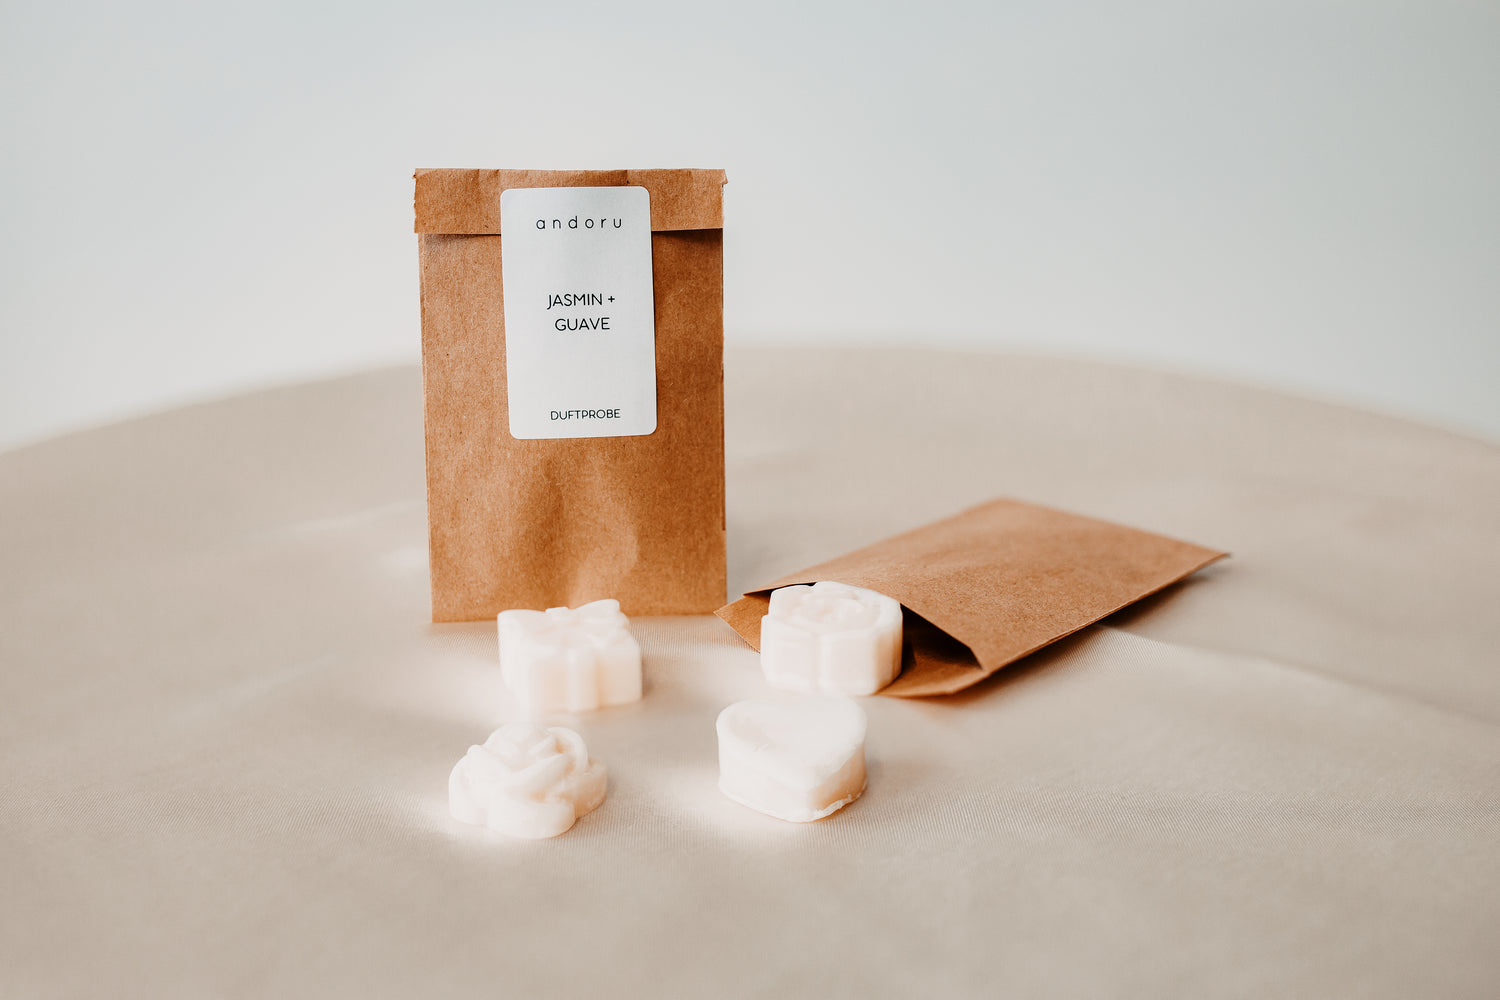 Duftproben - andoru Duftkerzen Wax Melts zum testen in einer Tüte aus Papier